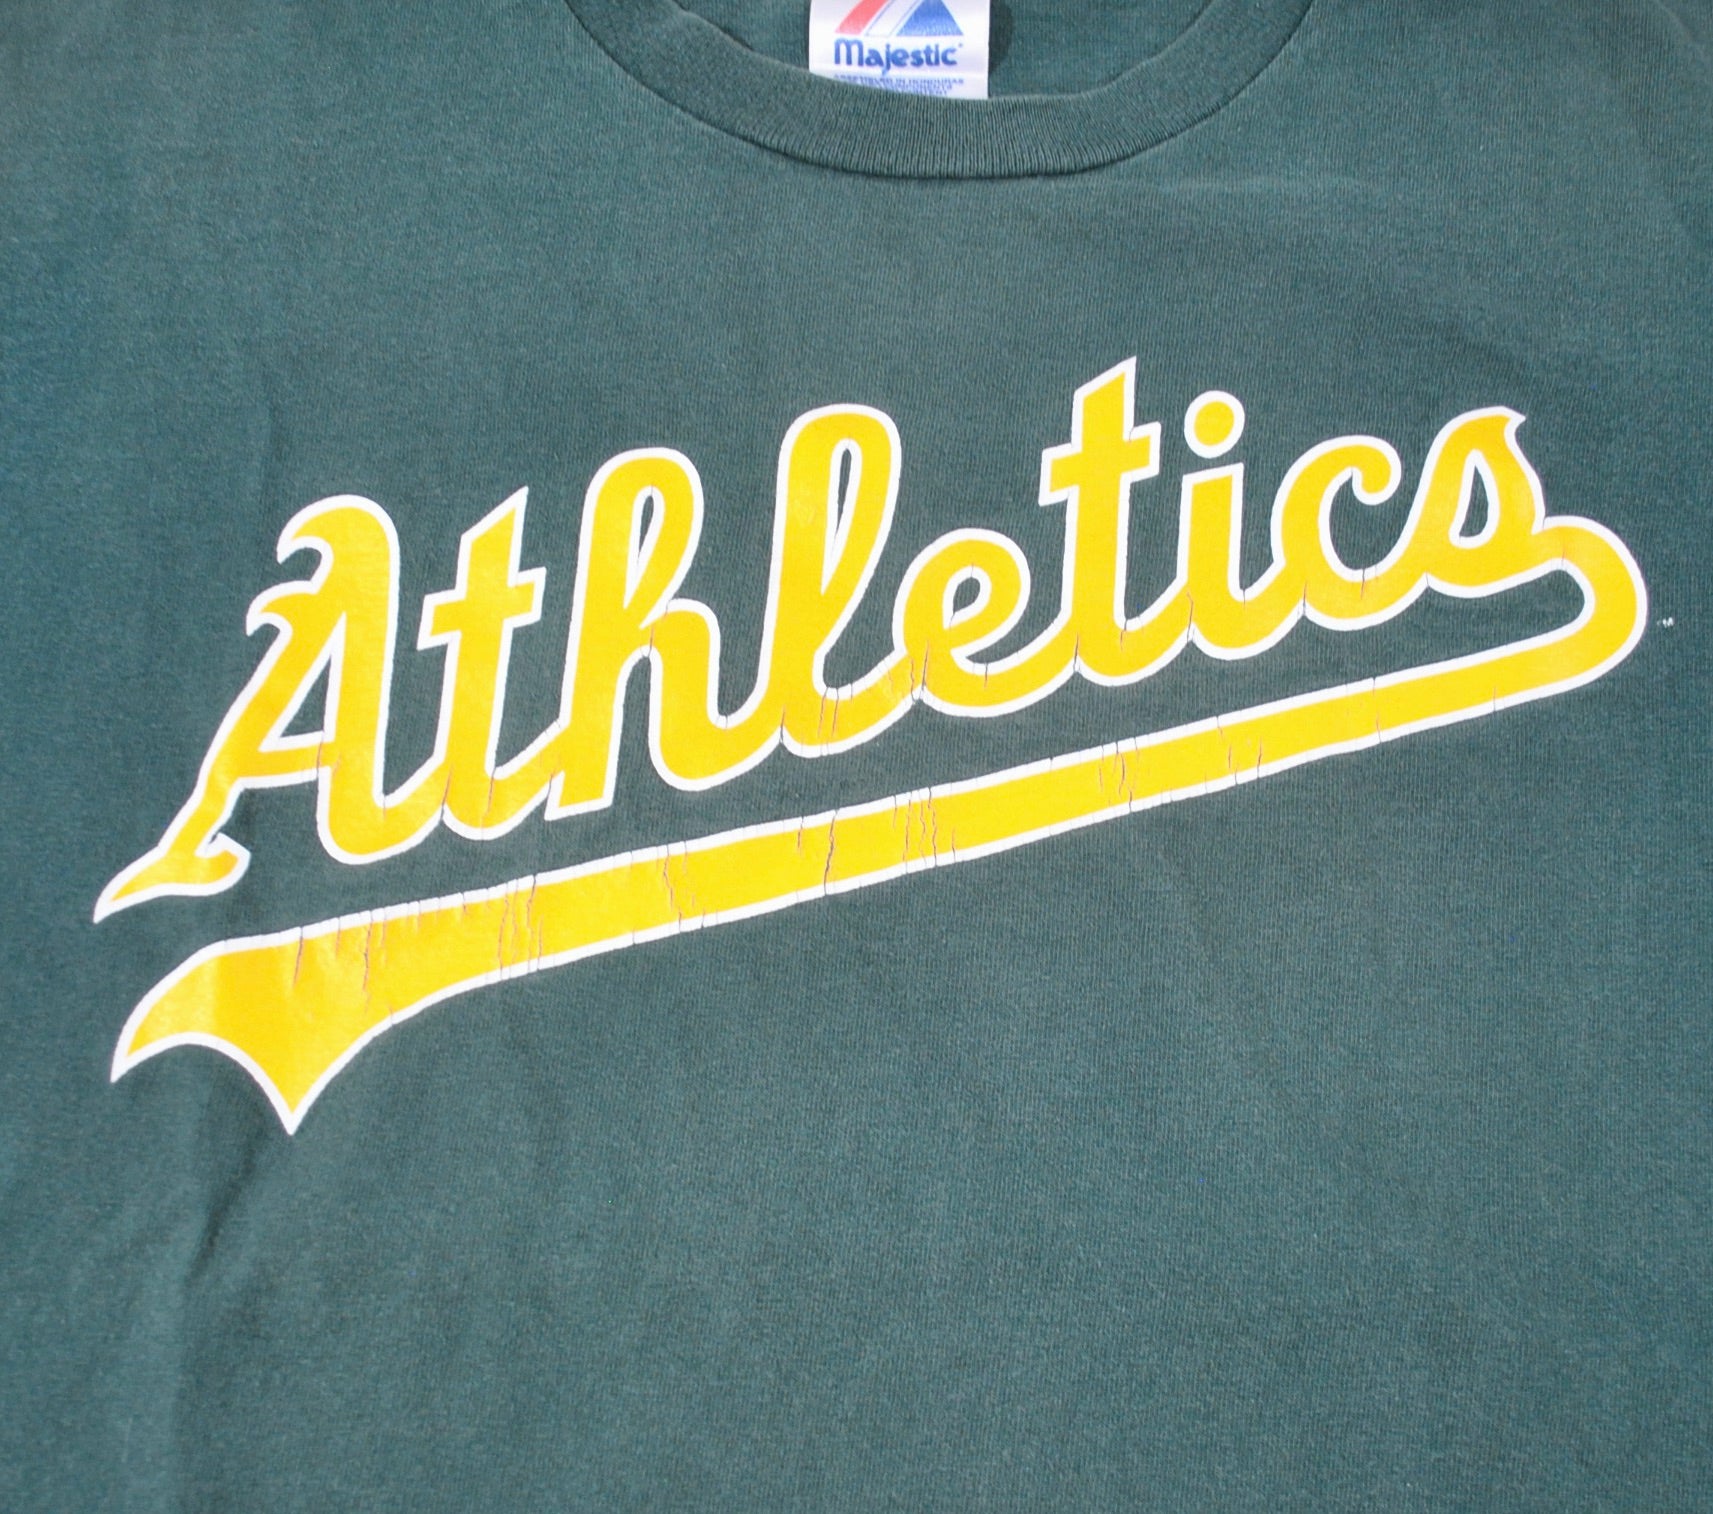 Jerseys - Oakland Athletics Throwback Apparel & Jerseys